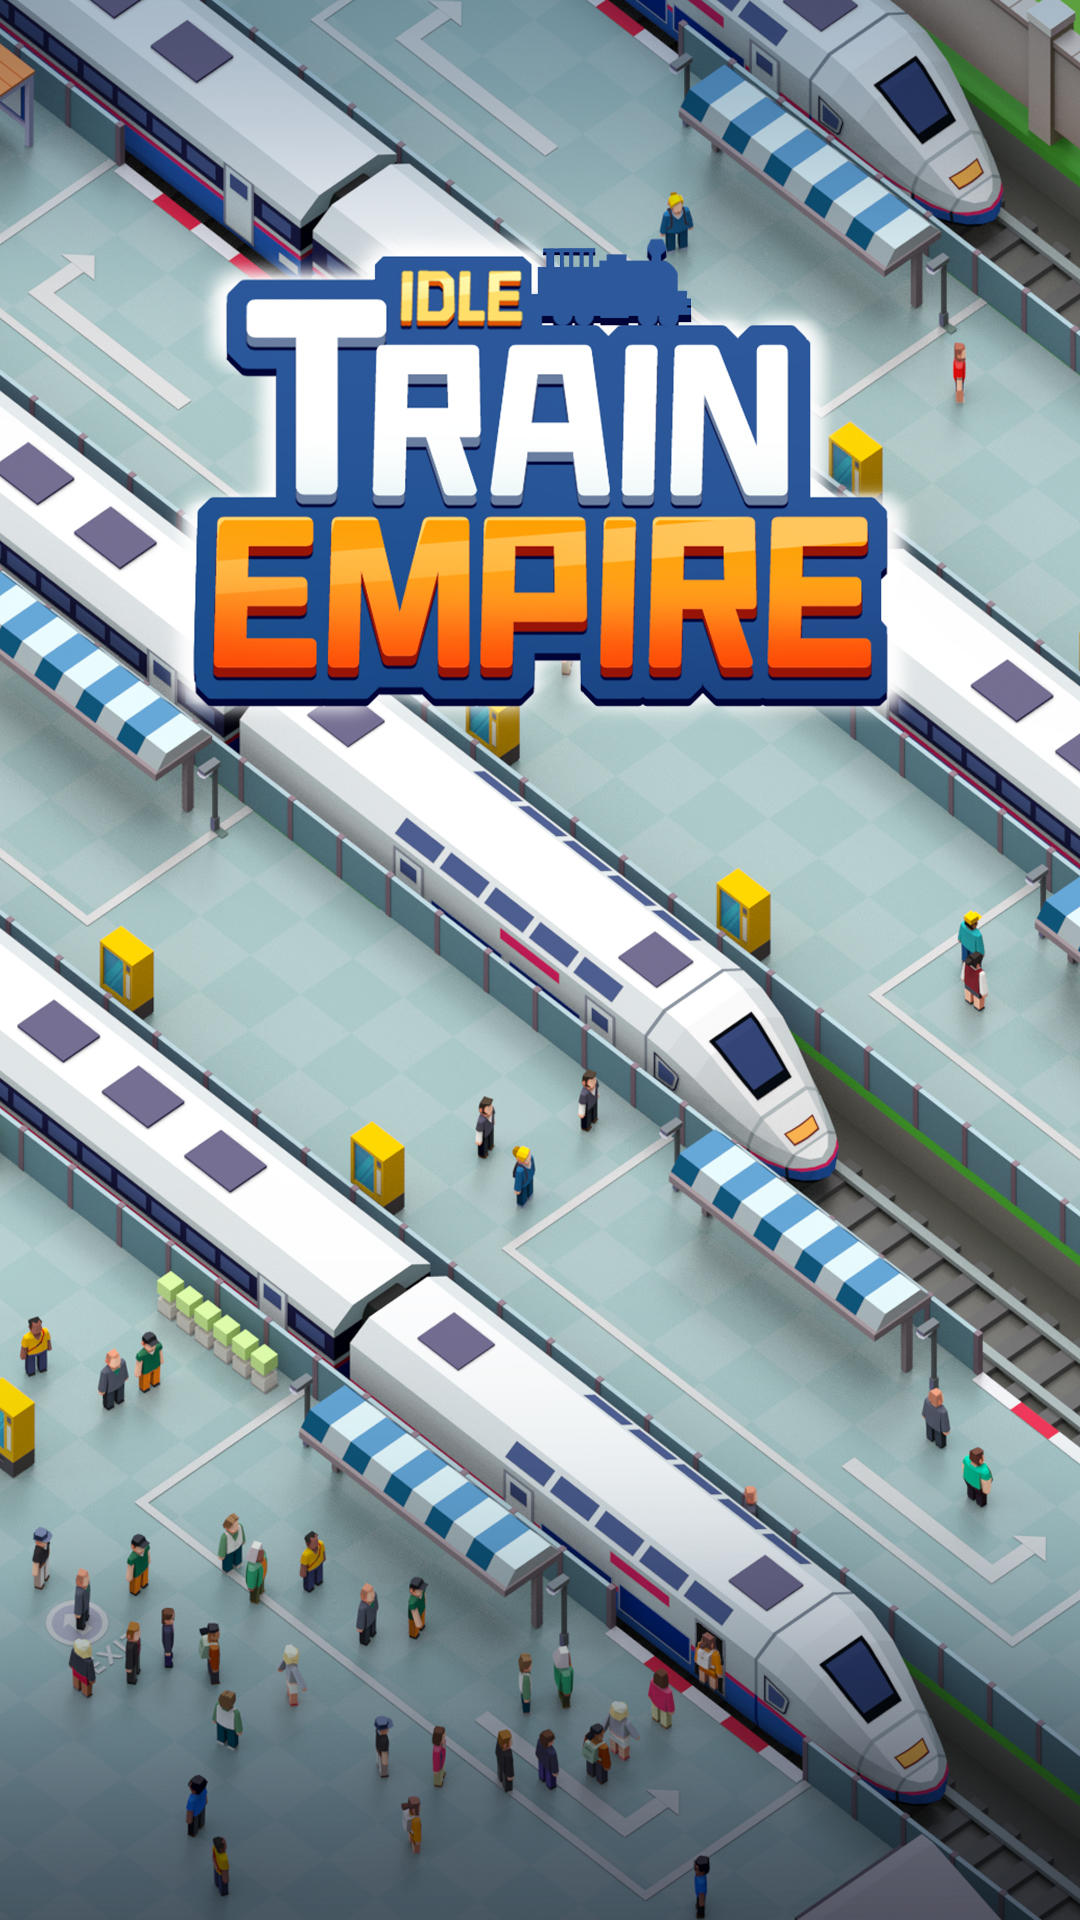 Screenshot 1 of Idle Train Empire - Juegos inactivos 1.27.03